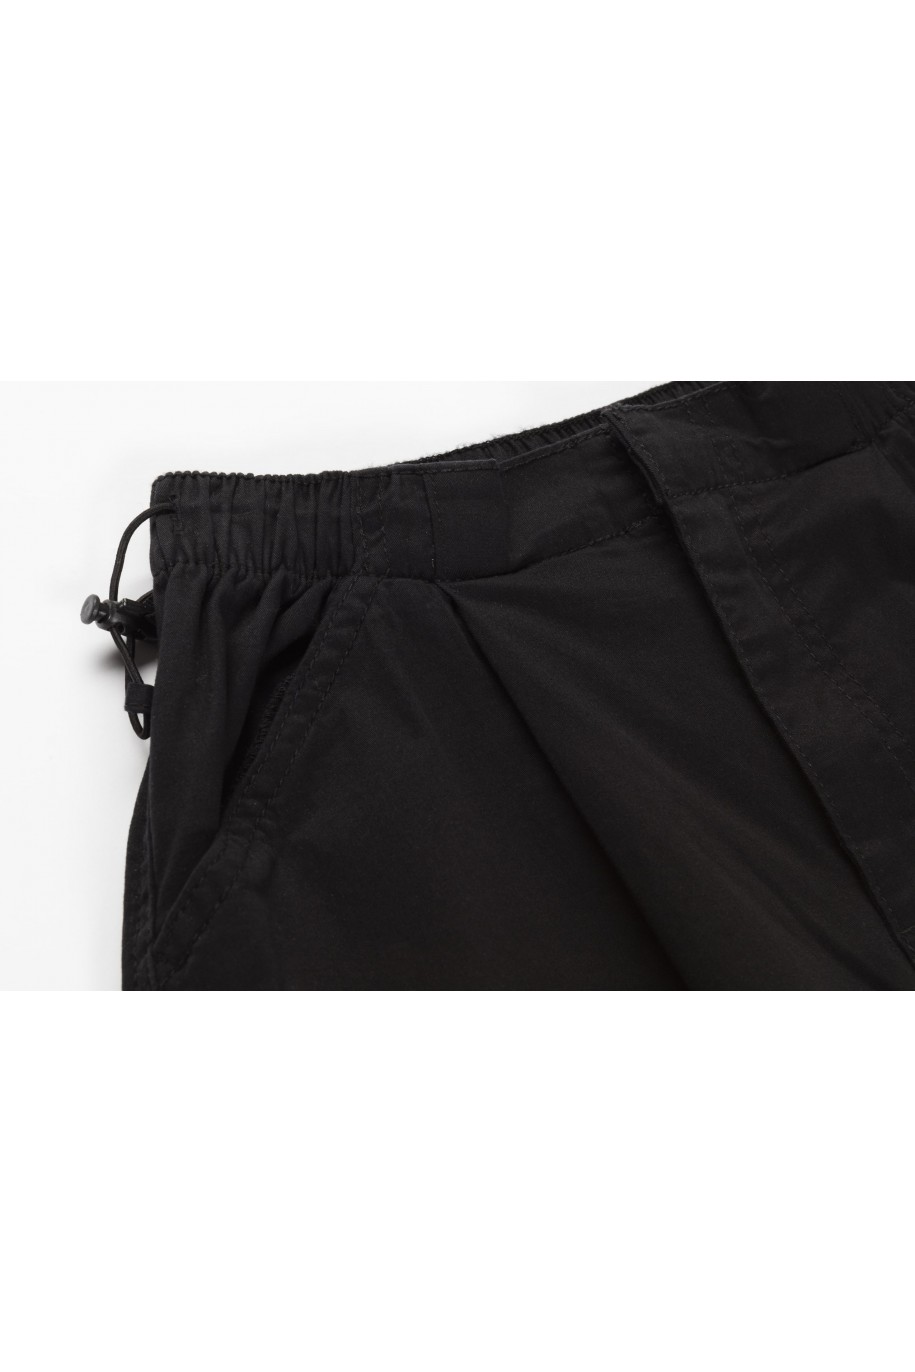 Czarne spodnie typu parachute z zaszewkami na nogawkach - 46055